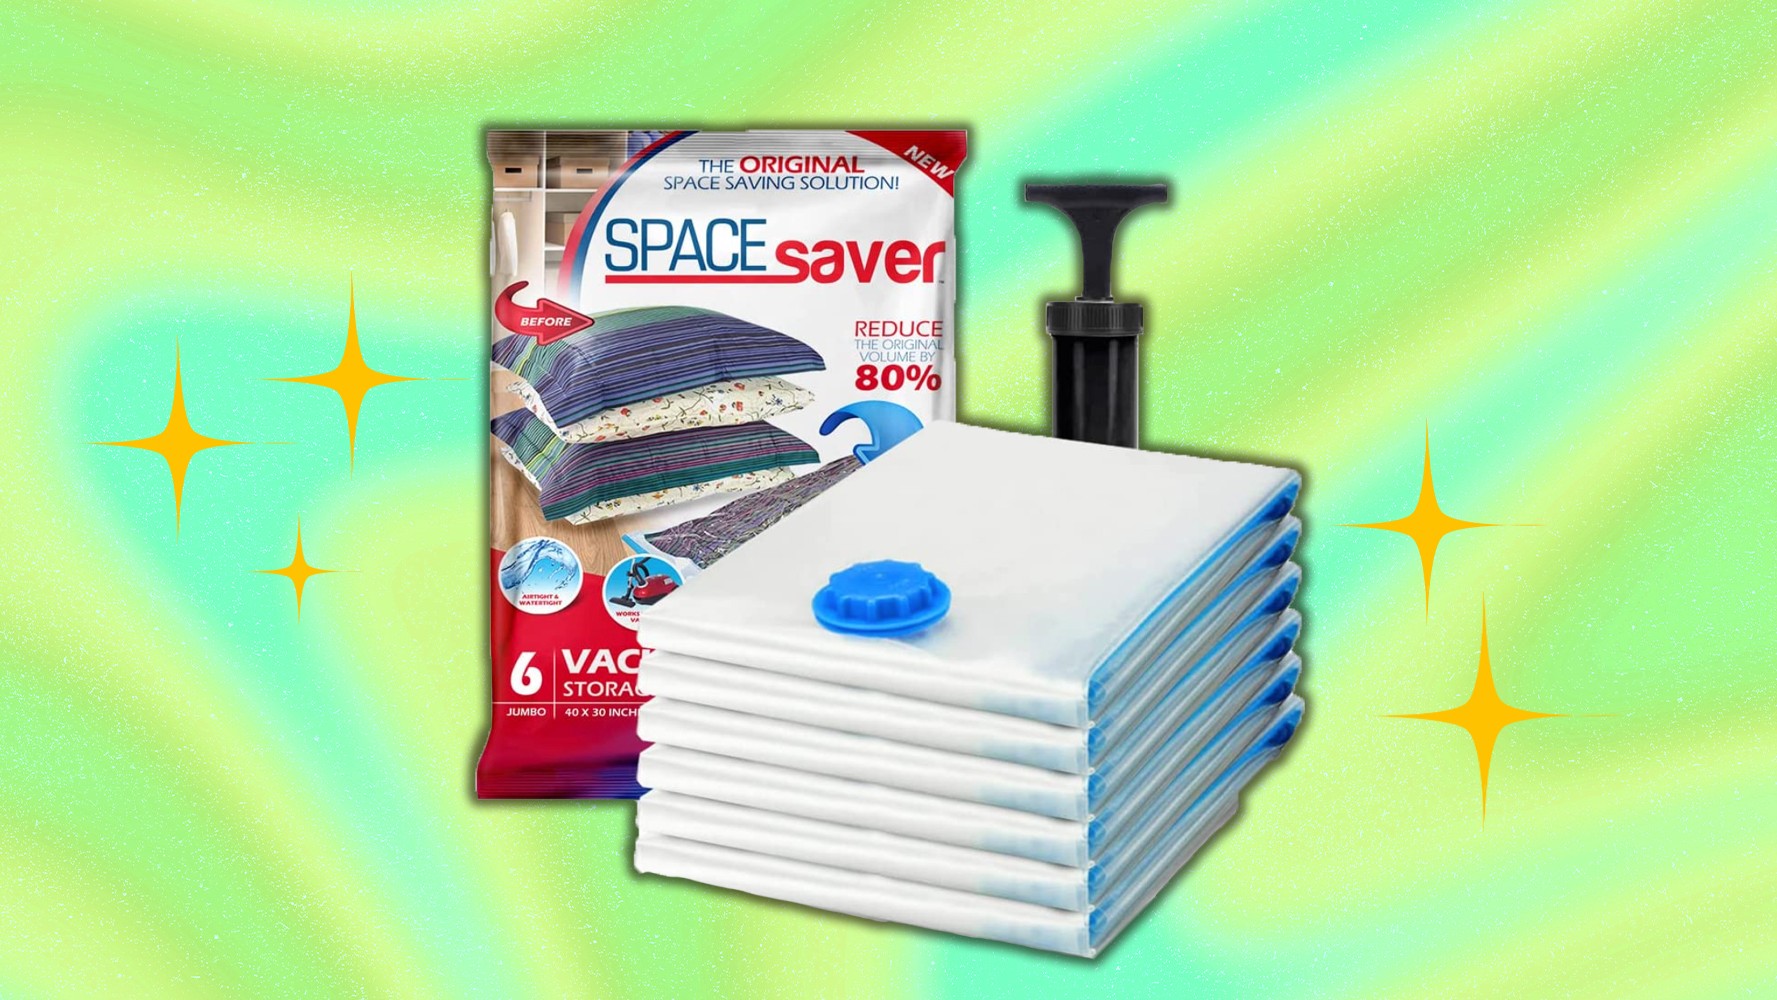 Shoppers Love the Spacesaver Premium Vacuum Storage Bags